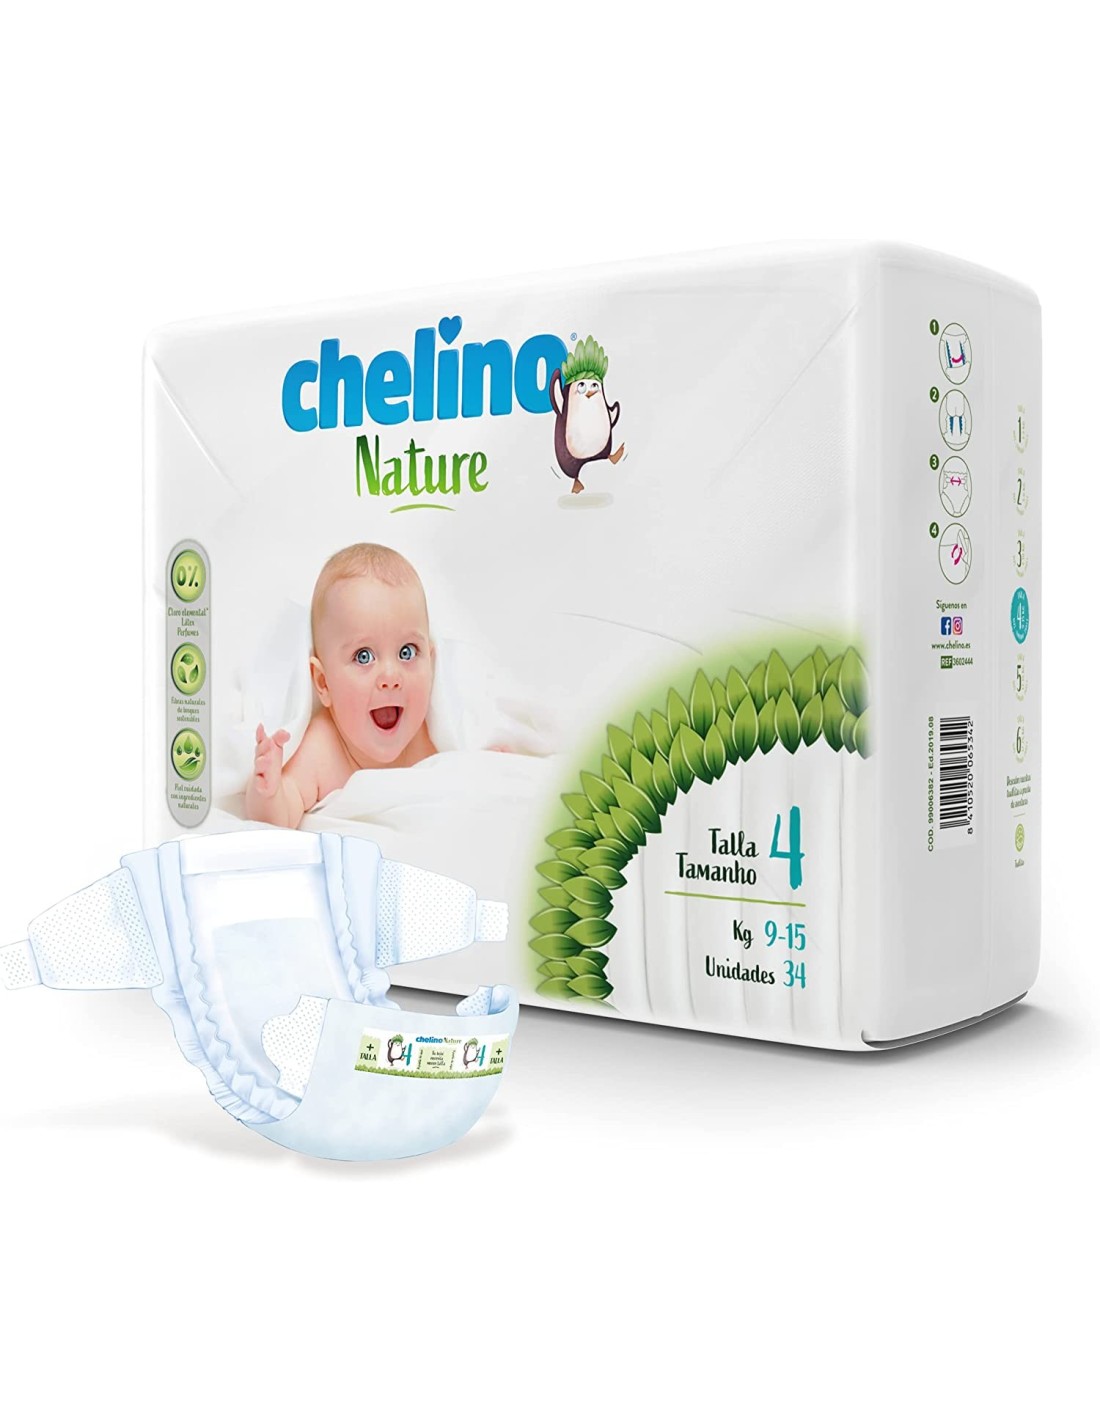 Chelino Toallitas Húmedas Infantiles para la piel del bebé